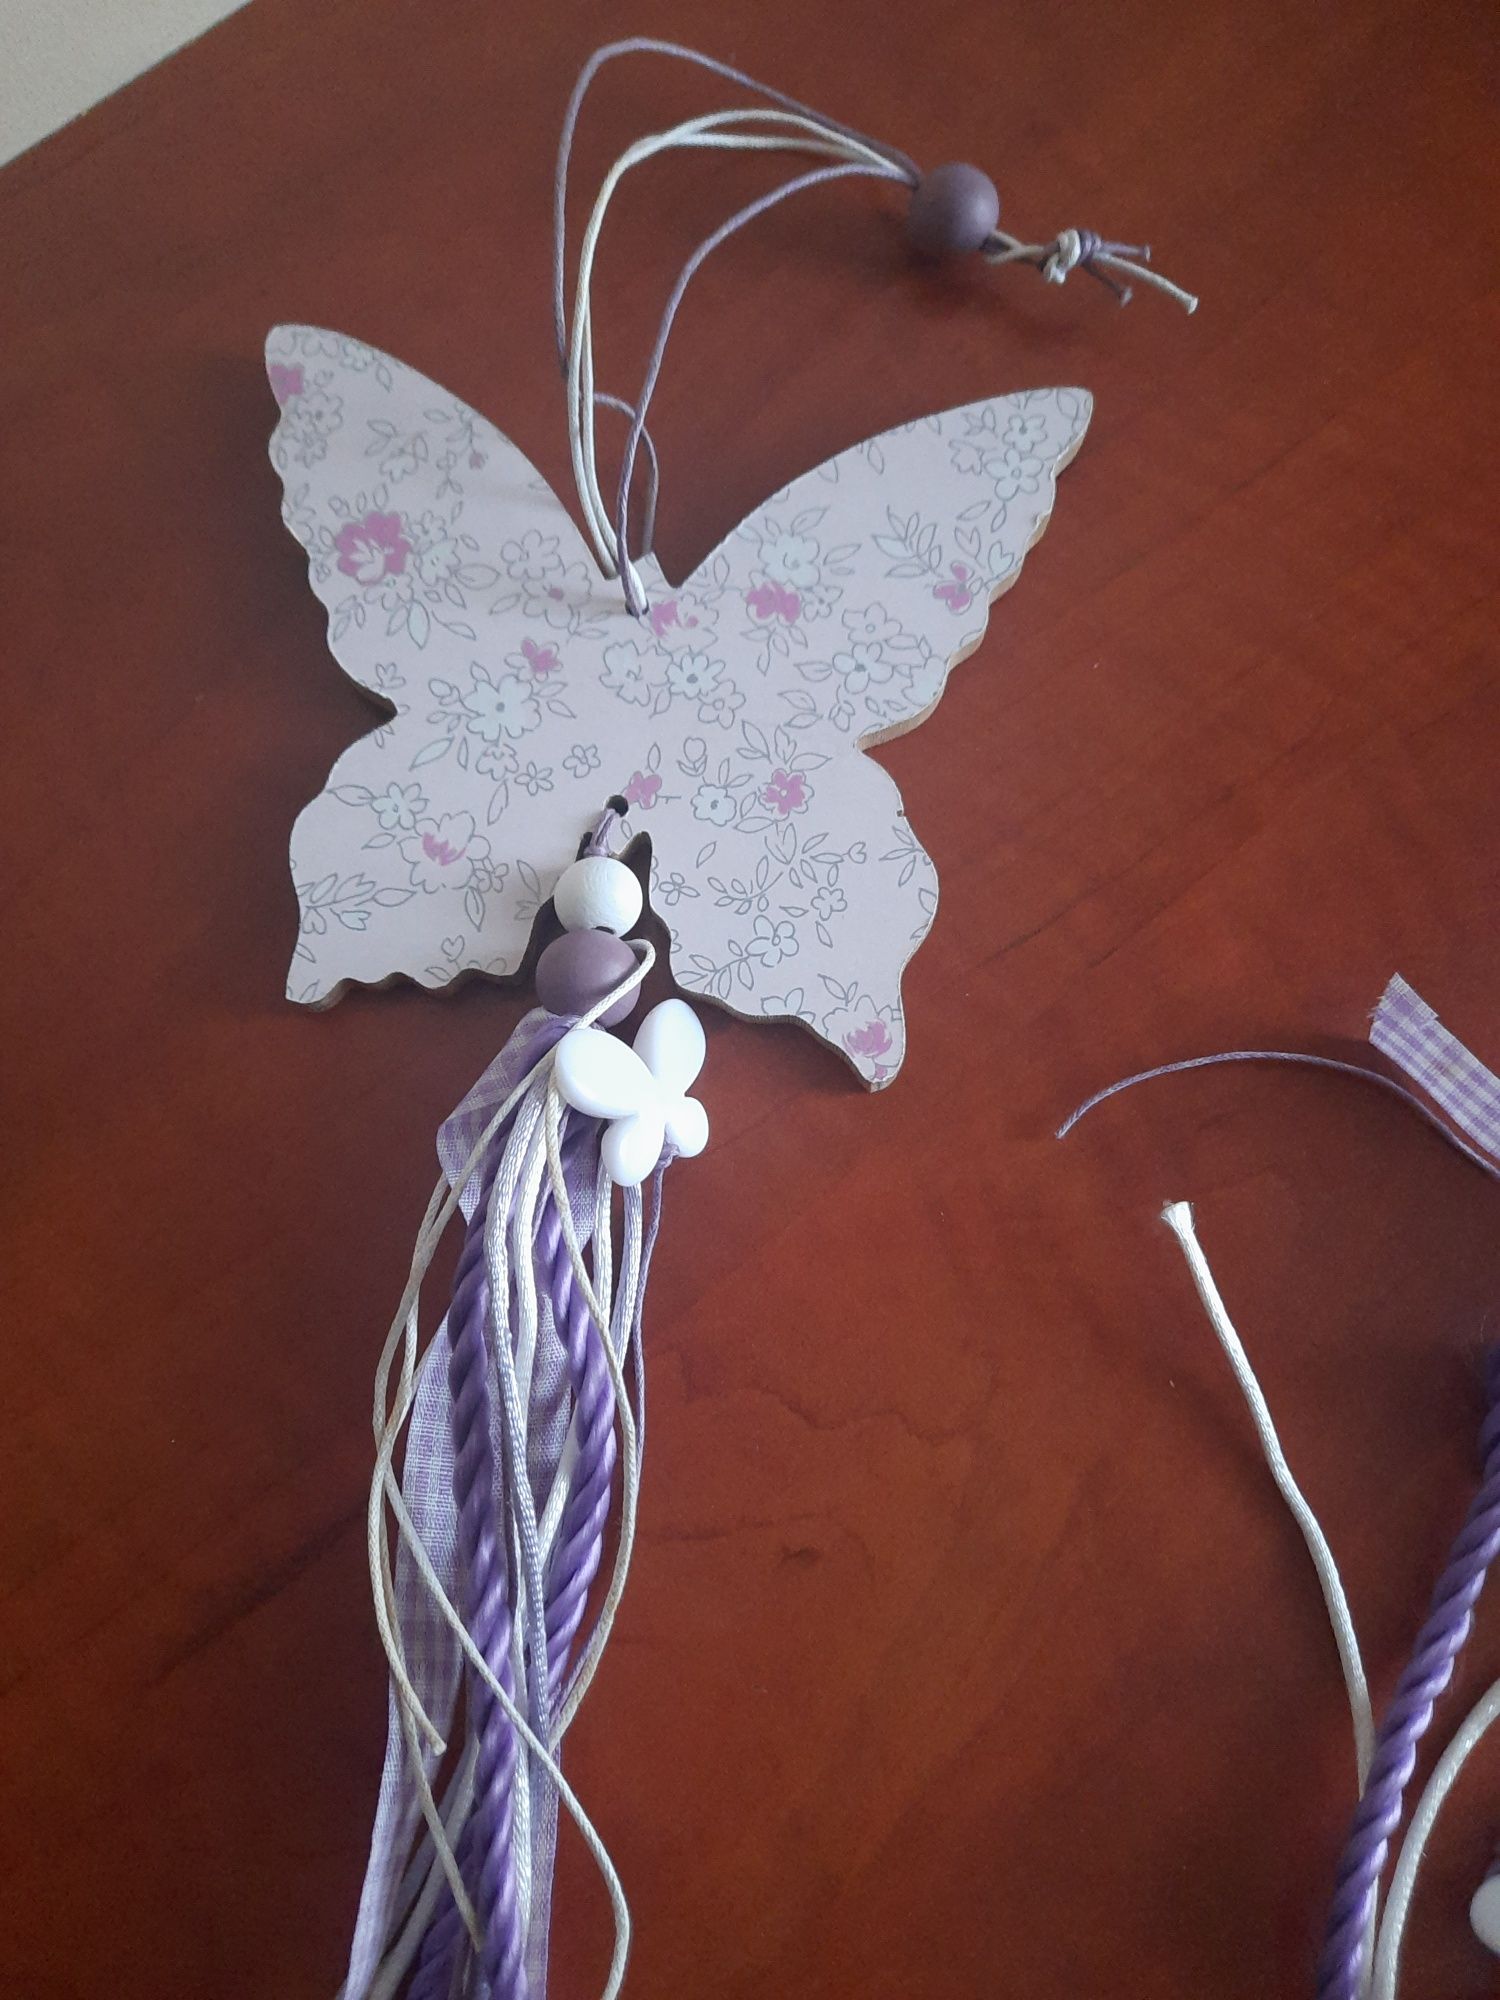 dekoracja do powieszenia, motylek, fiolety